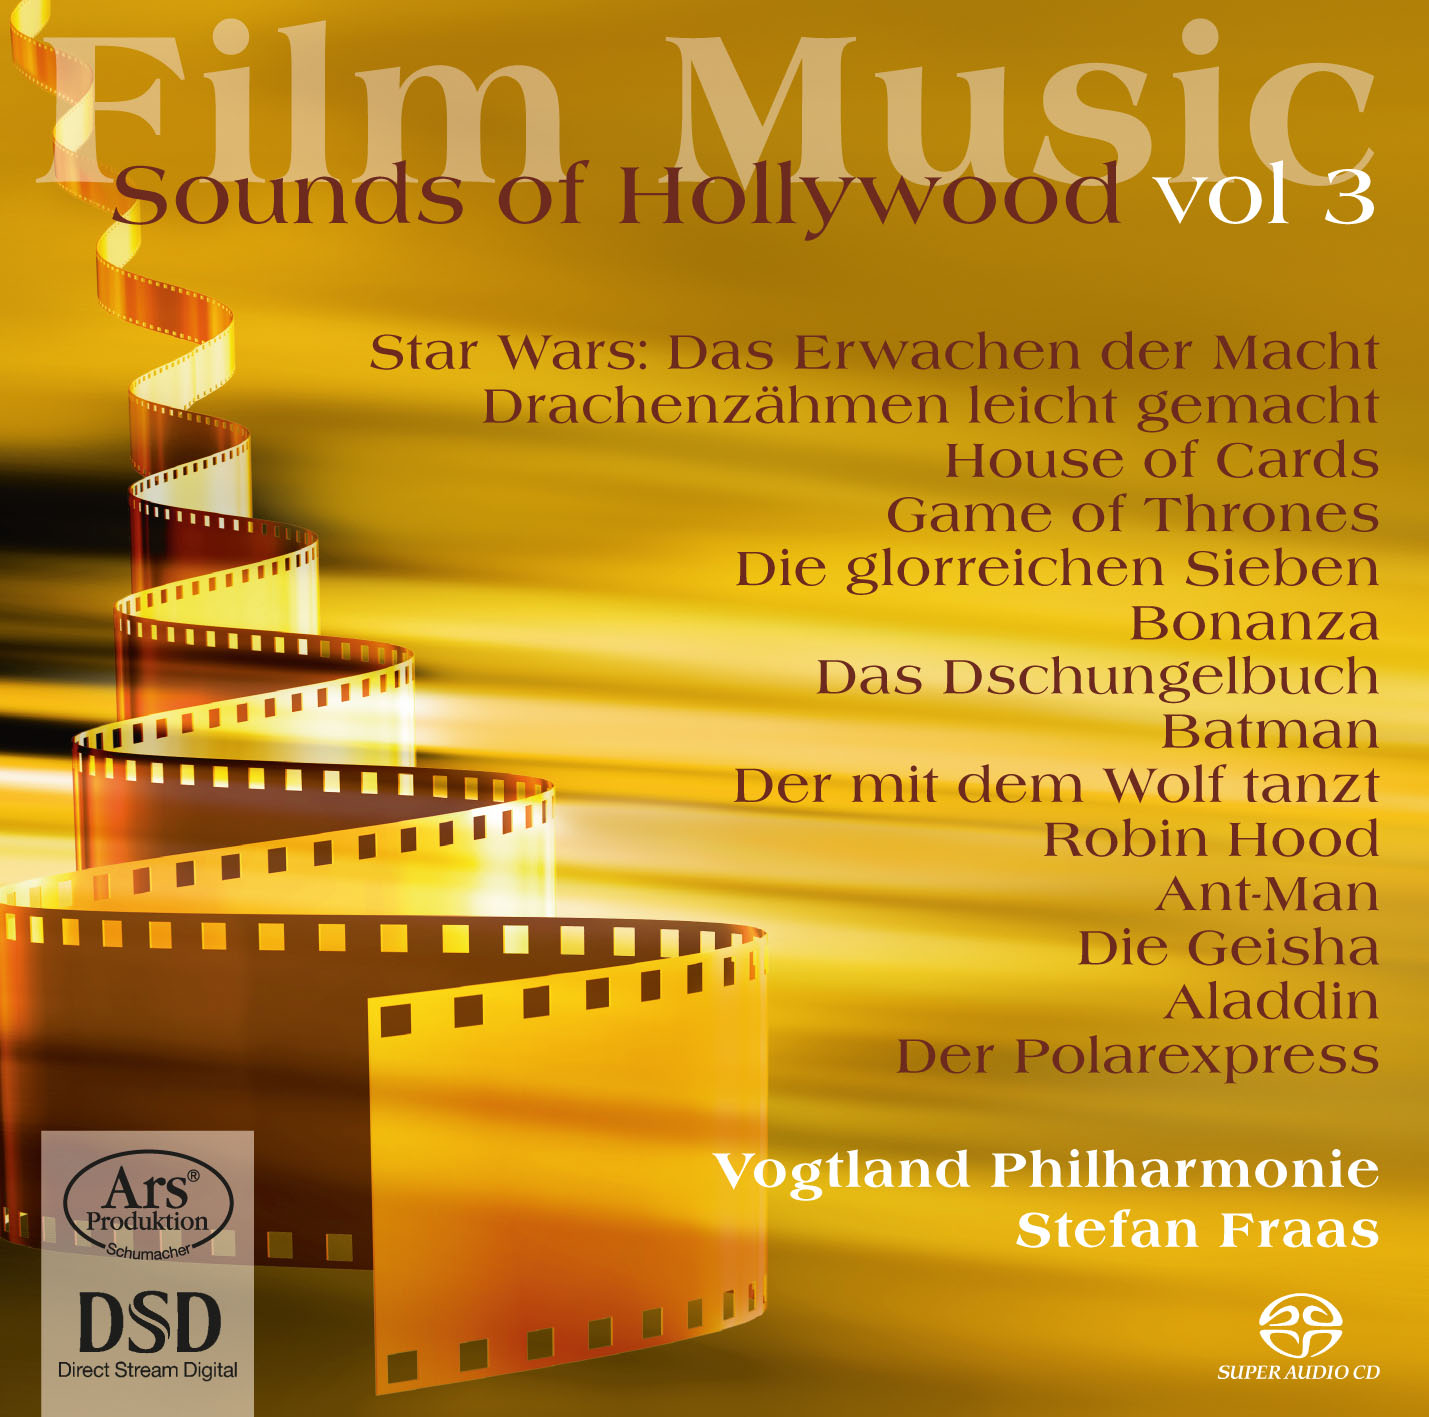 Vogtland Philharmonie mit dritter Filmmusik-CD